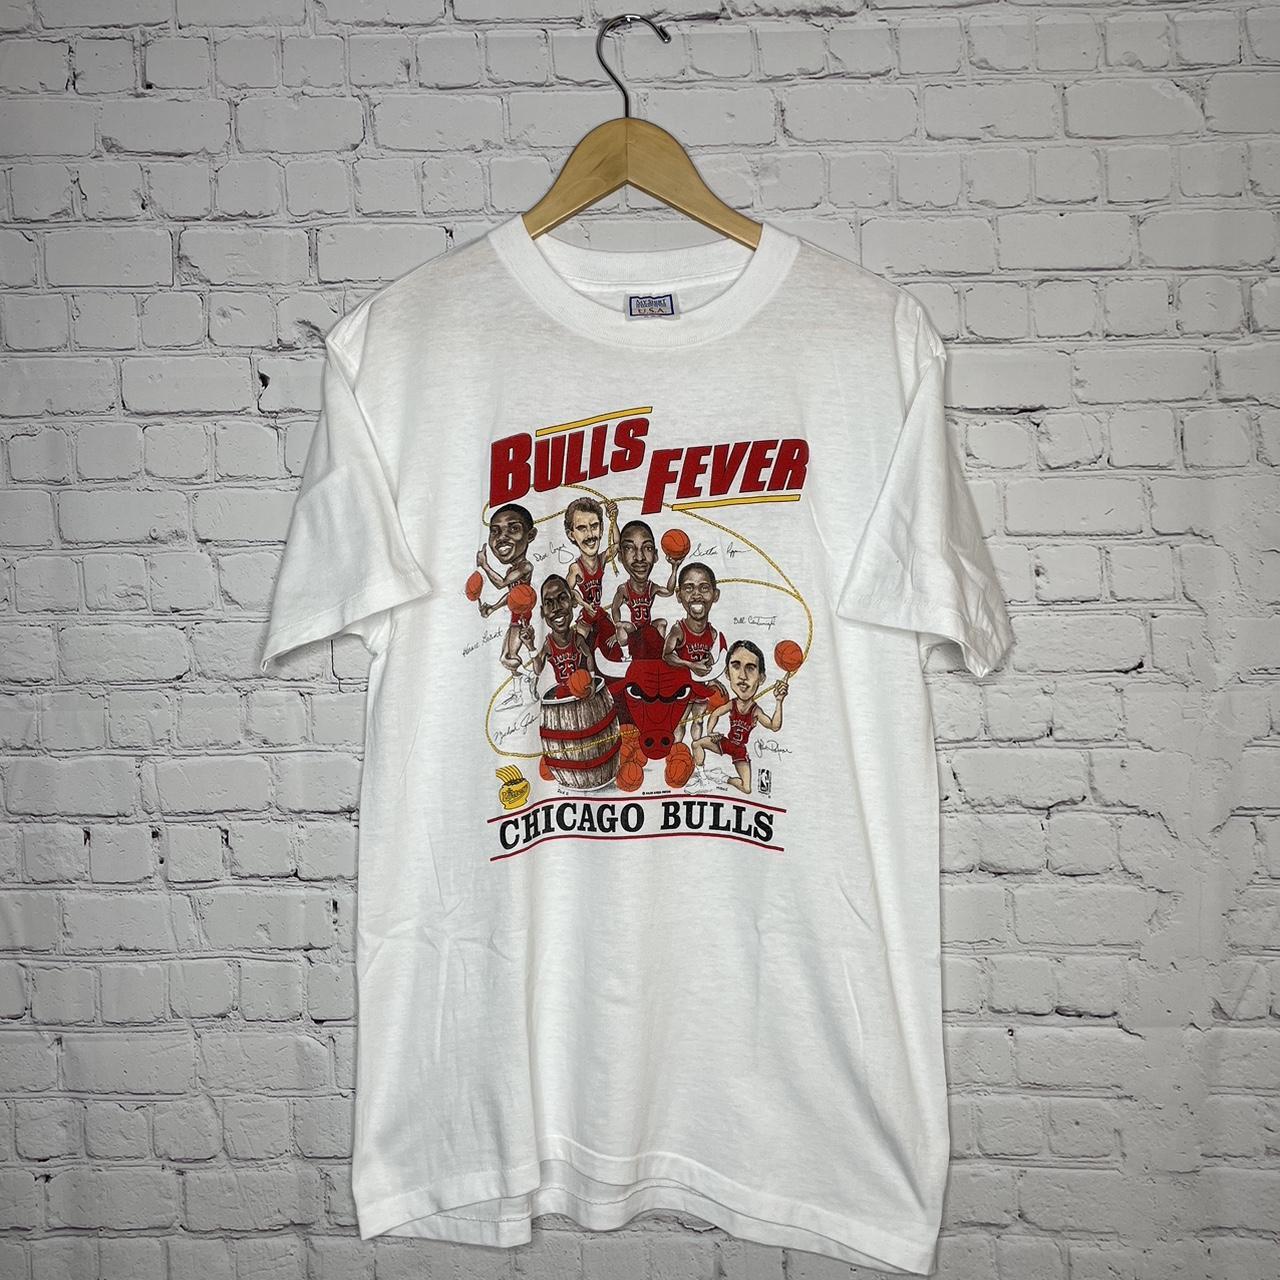 Vintage t shirt. Vintage Chicago Bulls t shirt. - Depop